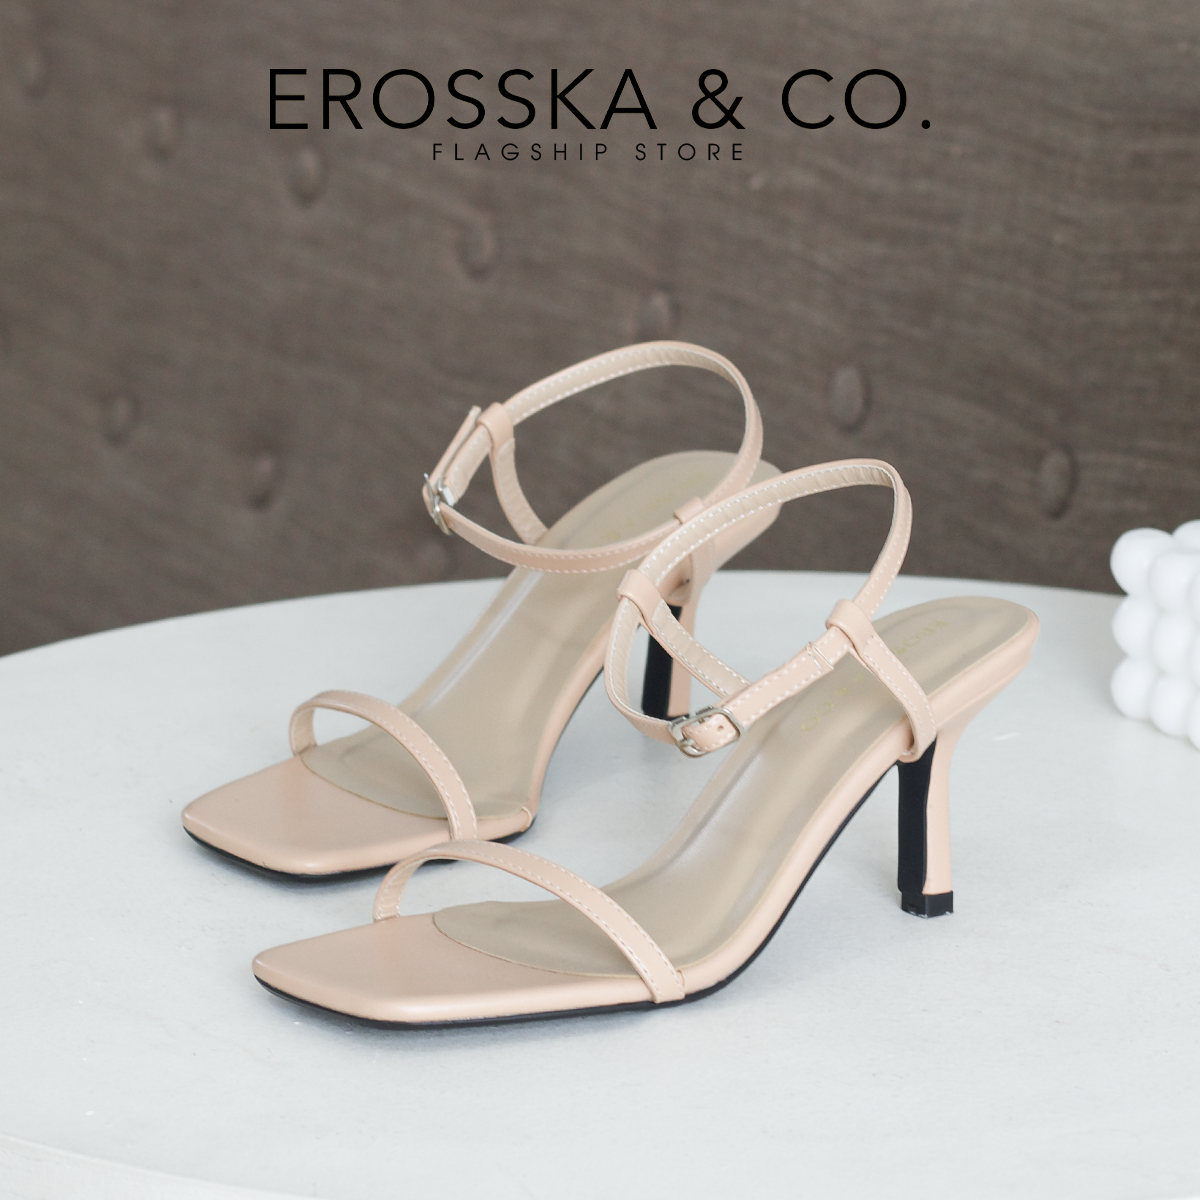 Erosska - Giày sandal cao gót nữ mũi vuông quai mảnh cao 7cm - EB062